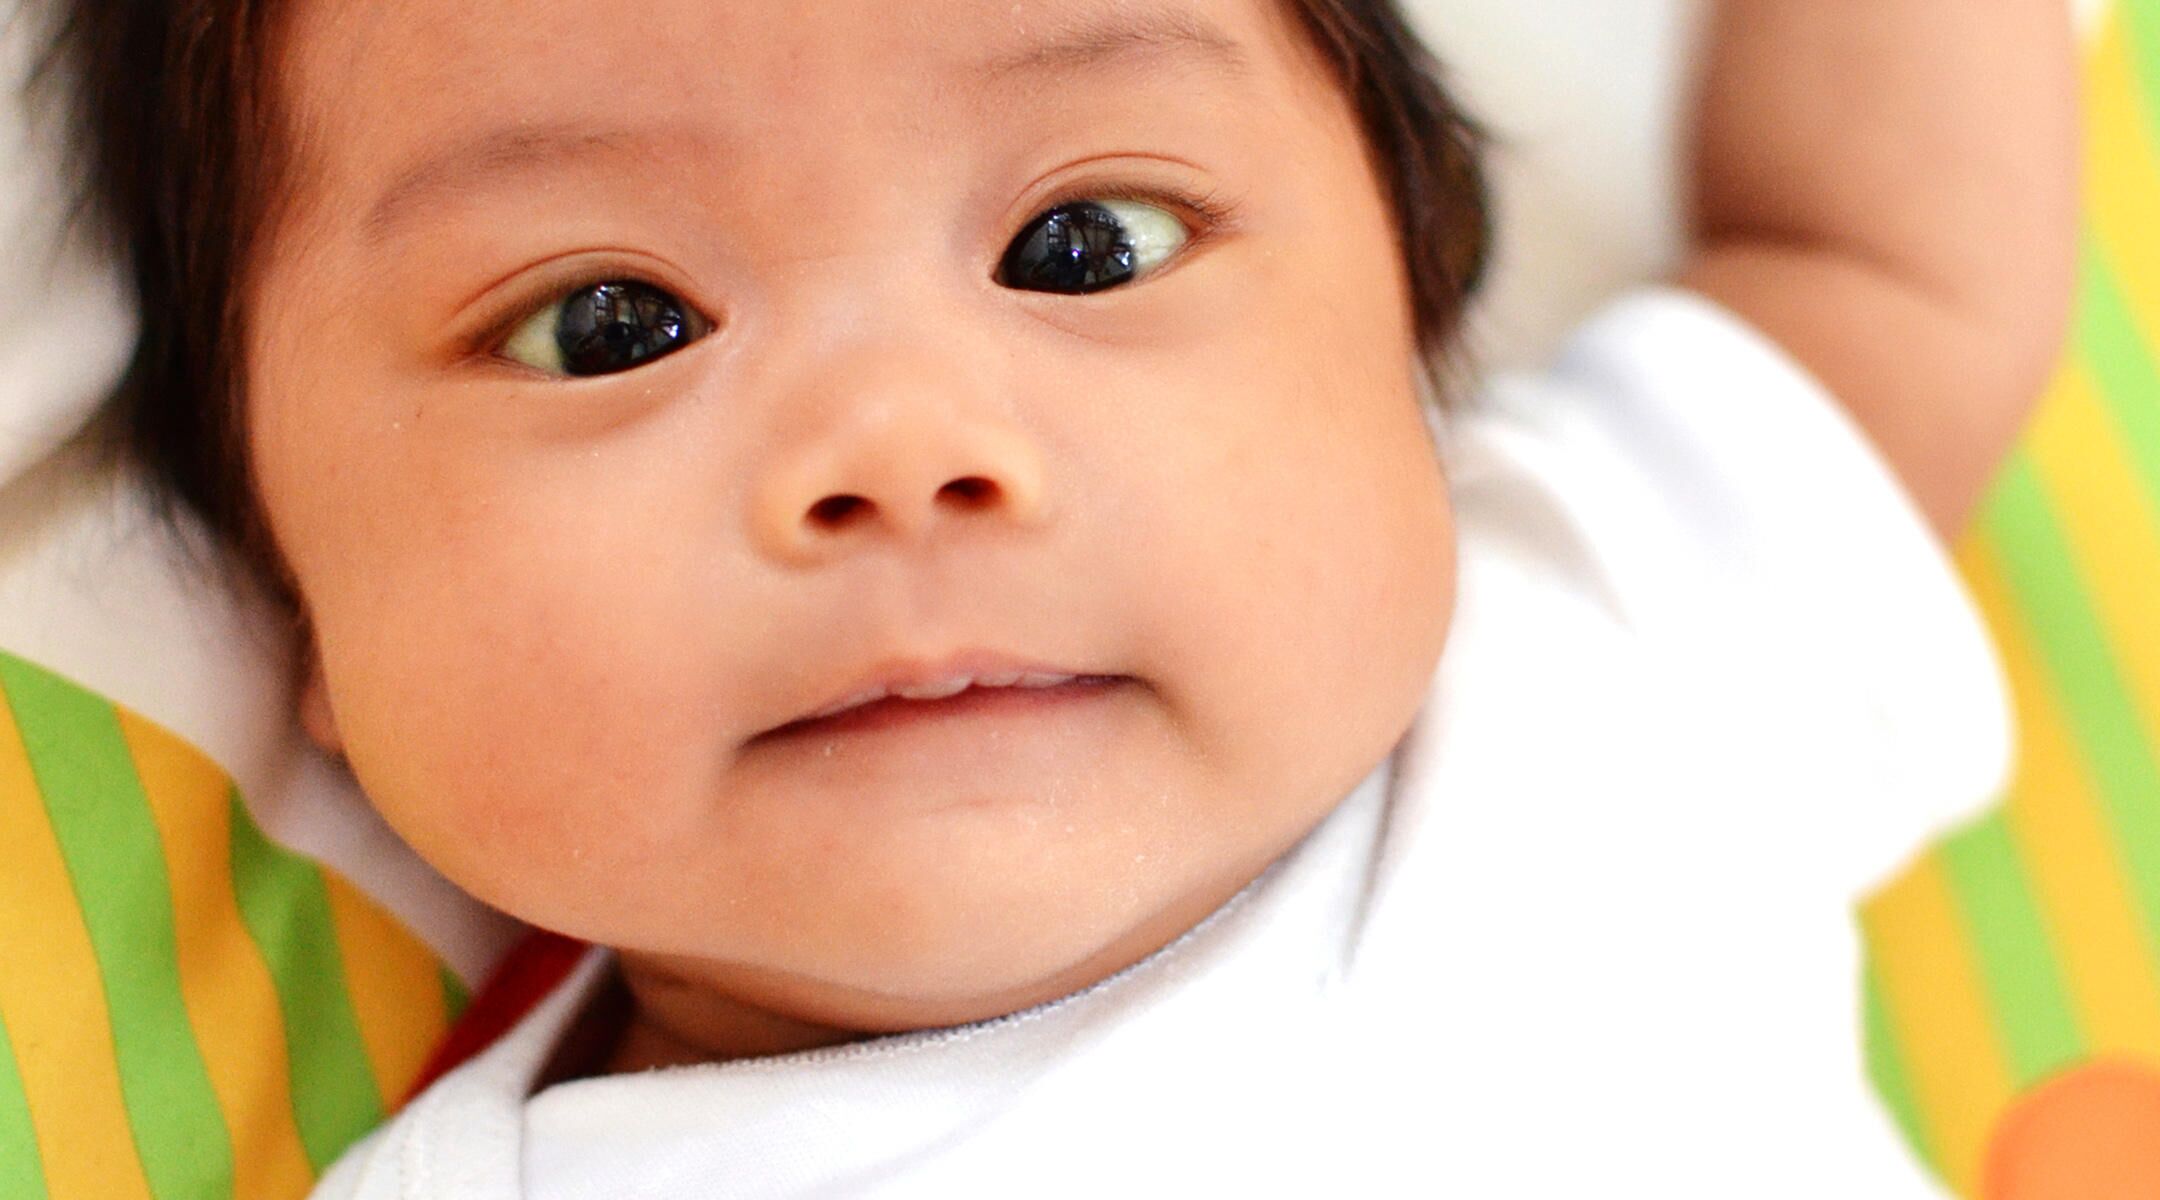 Q&A: Newborn Has Crossed Eyes?